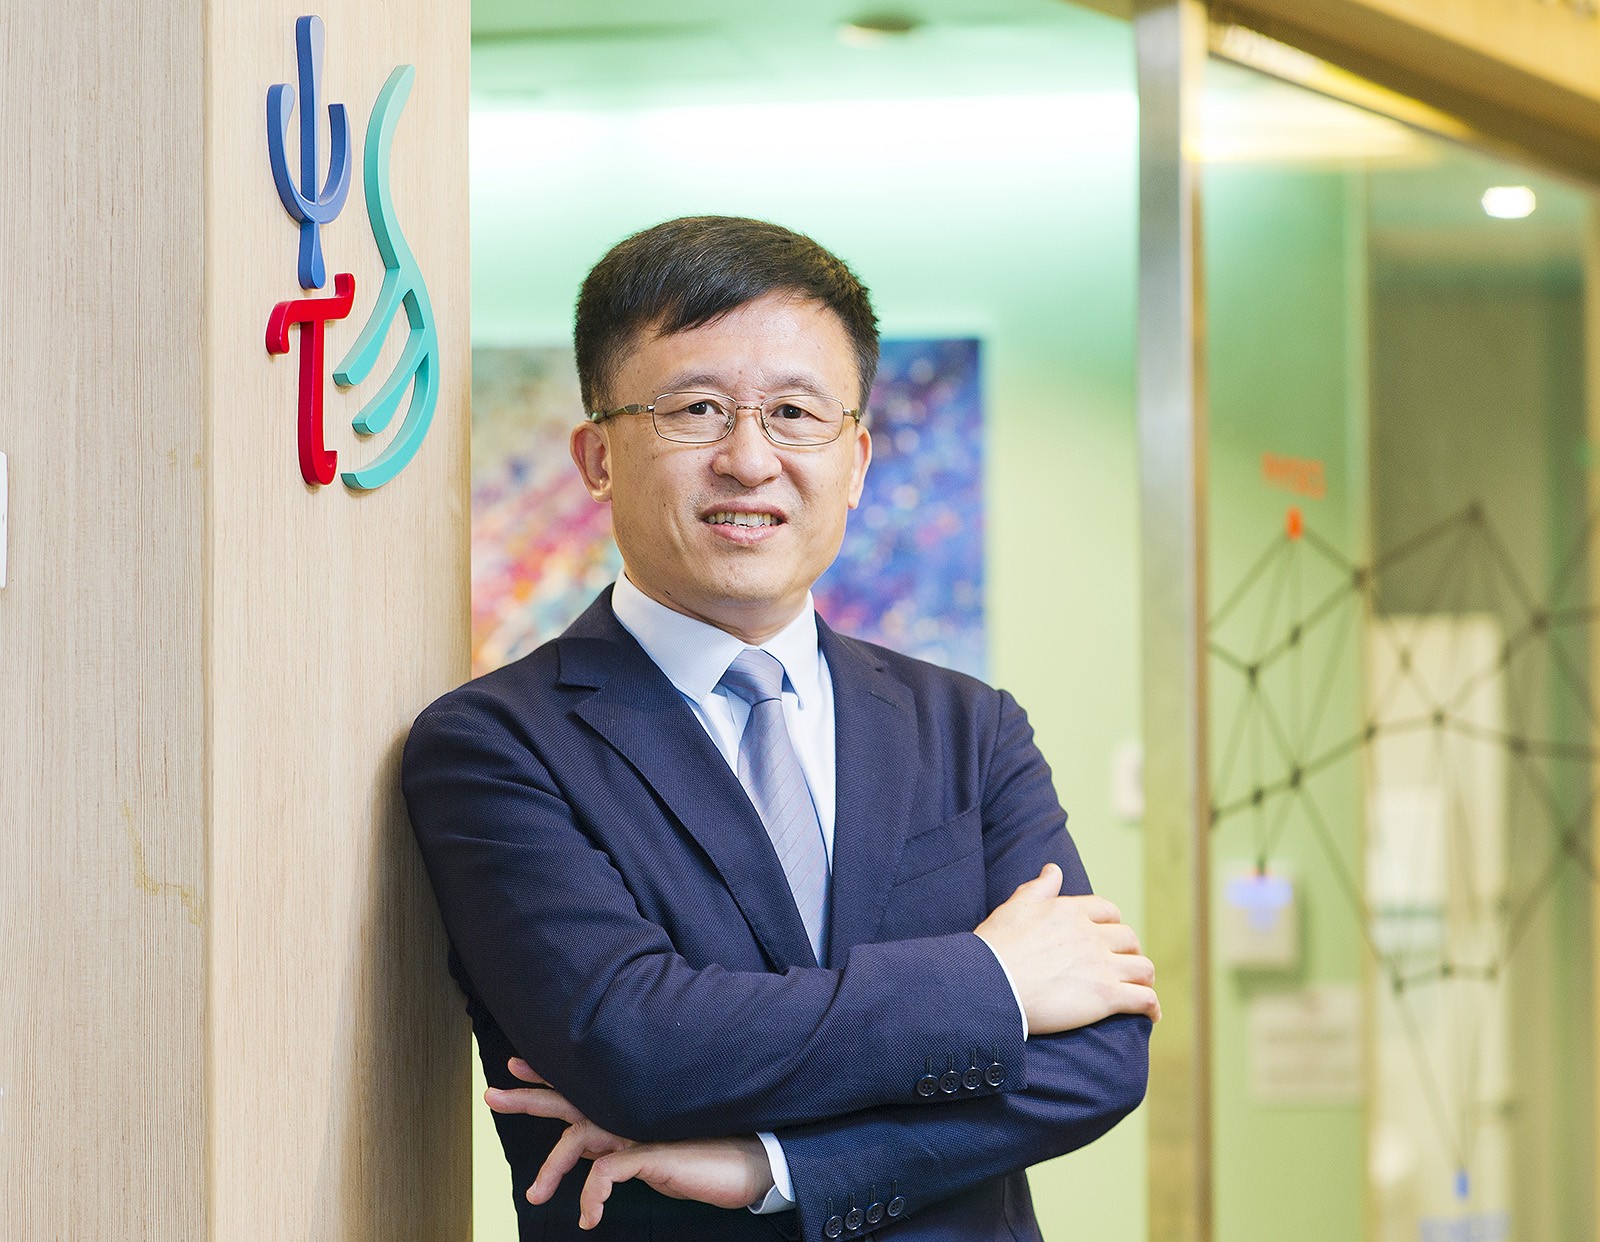 Professor Zhang Ruiqin